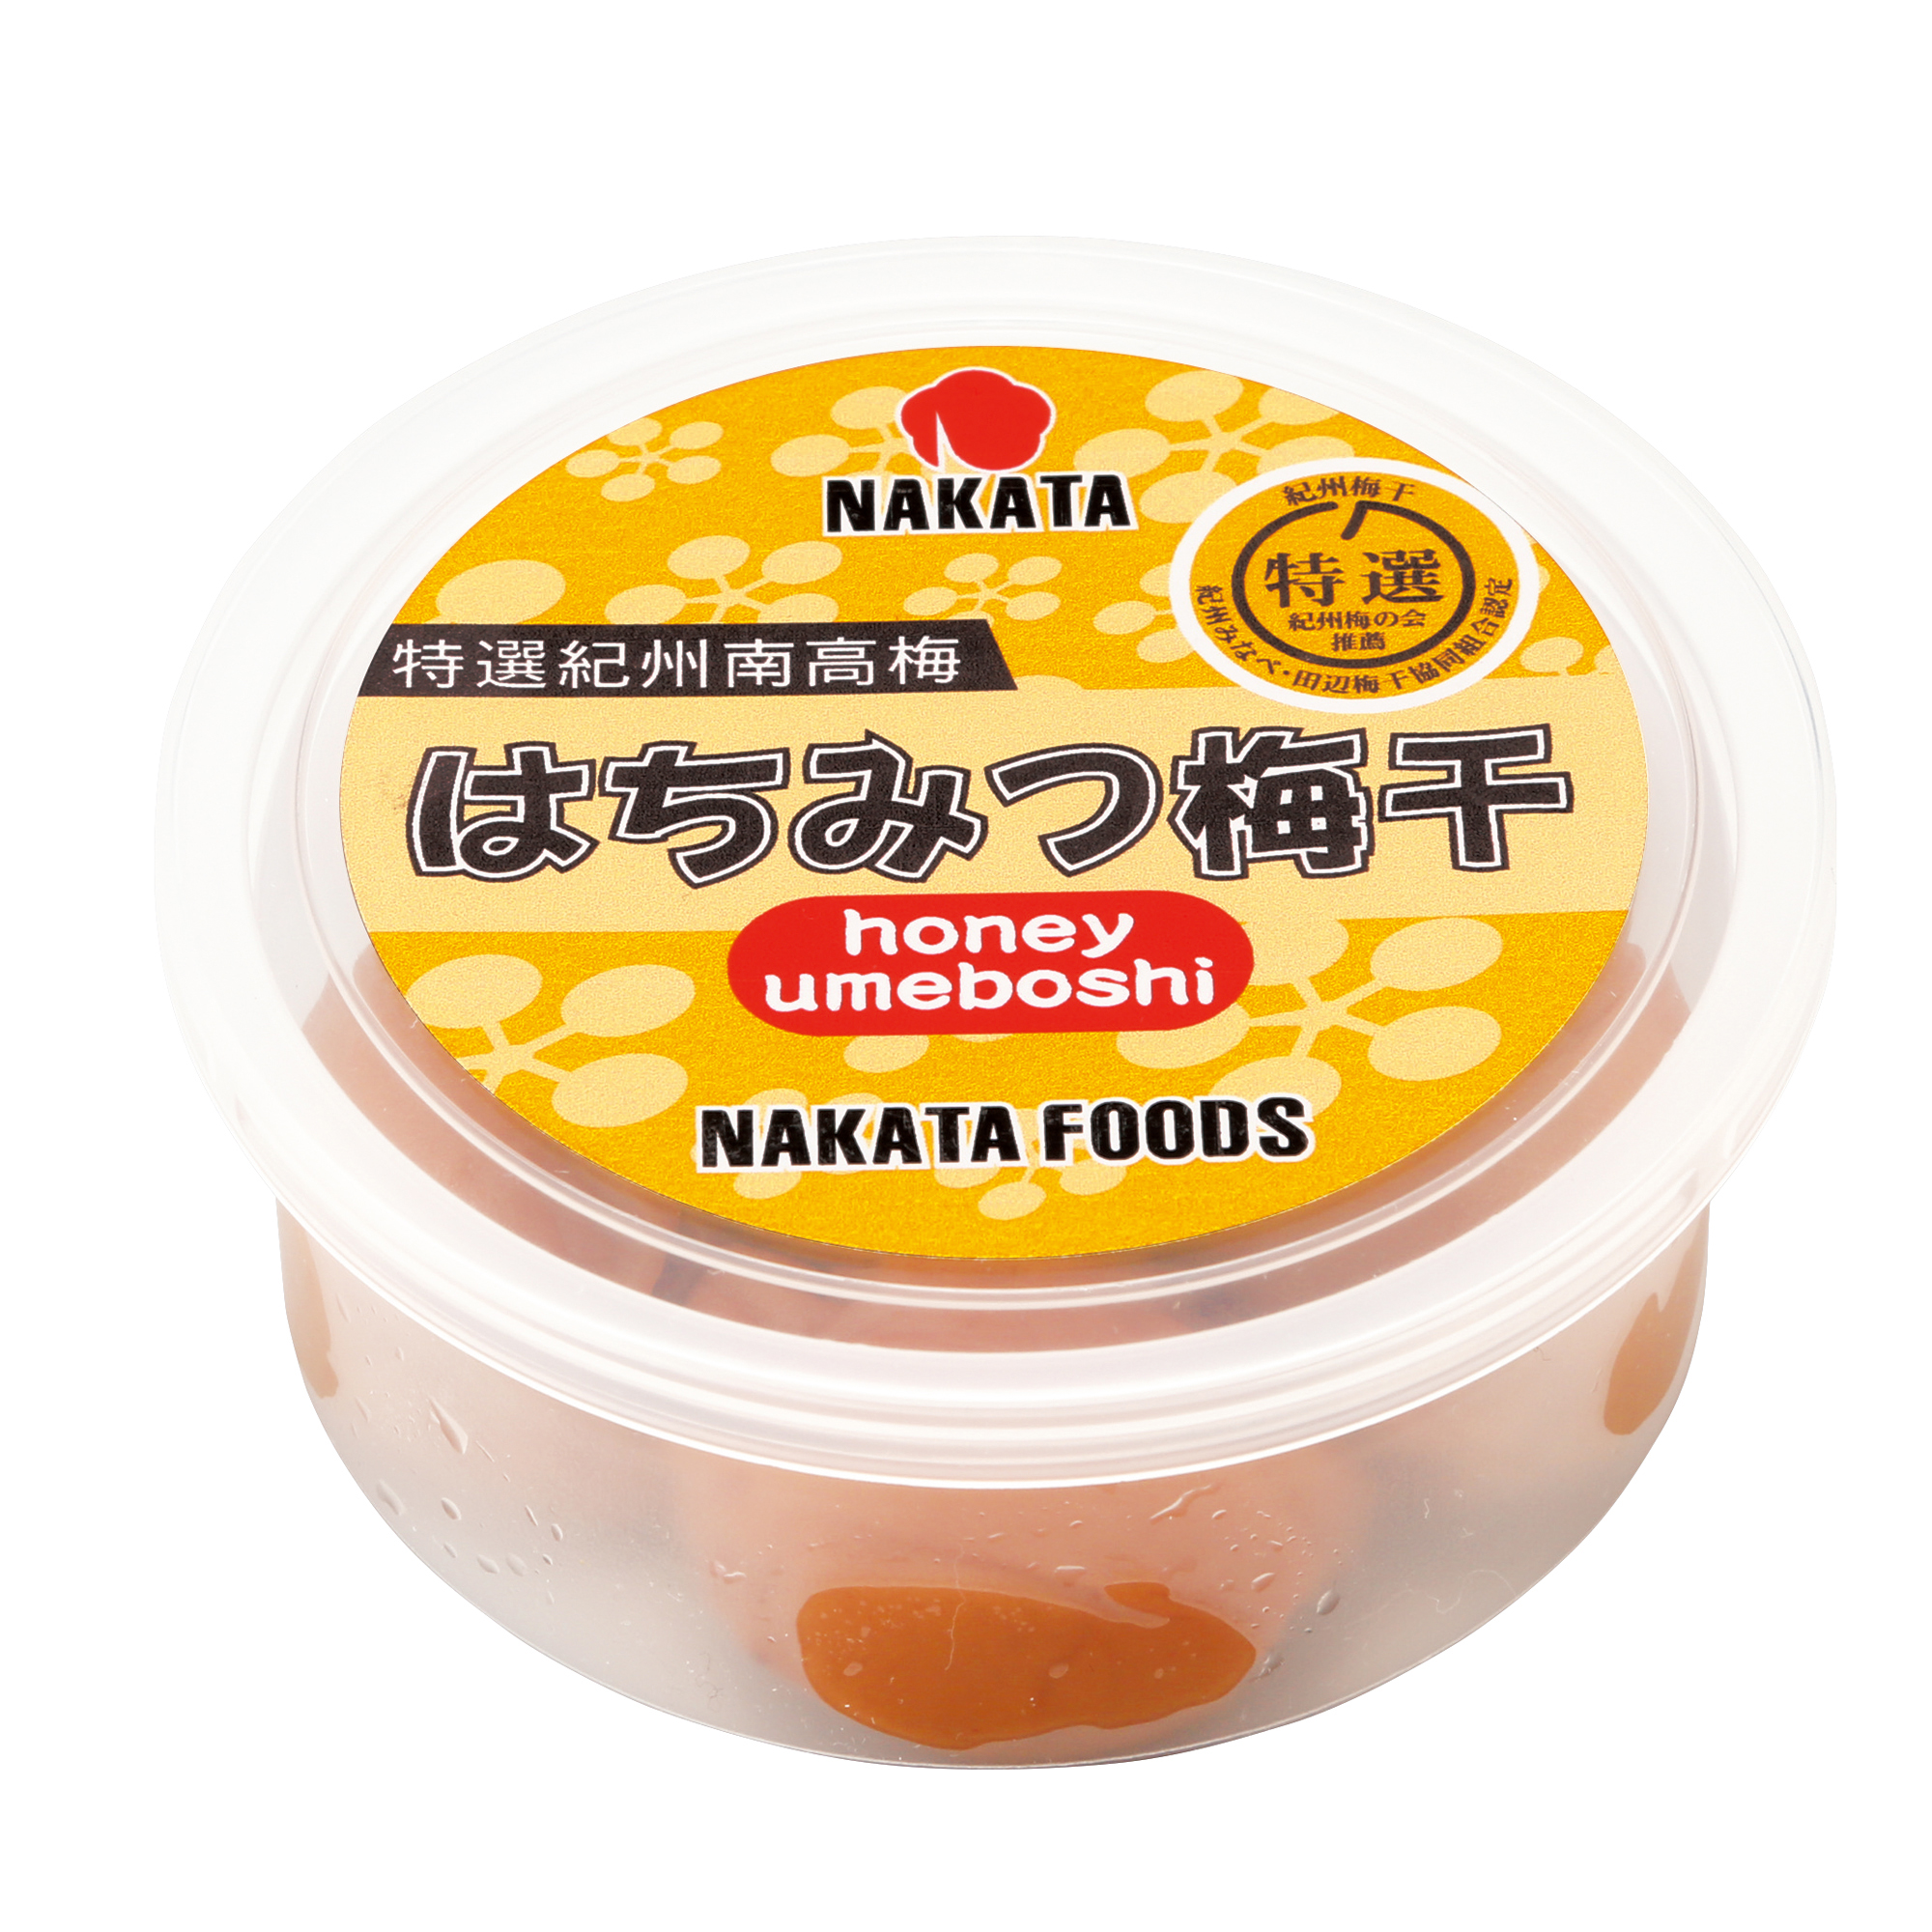 Honey Umeboshi 6% salt